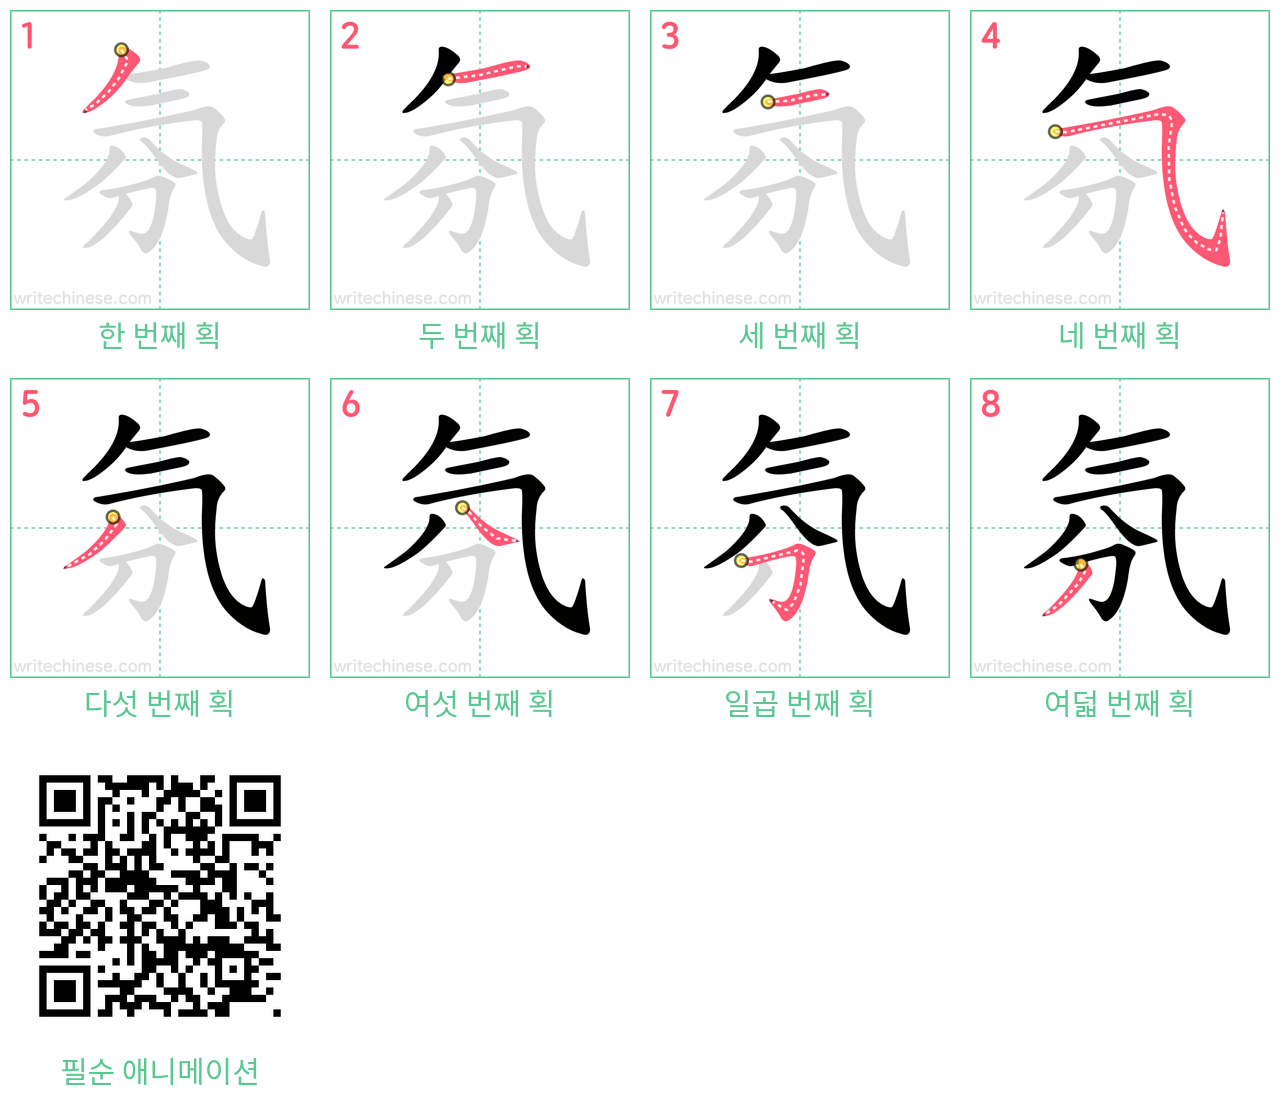 氛 step-by-step stroke order diagrams